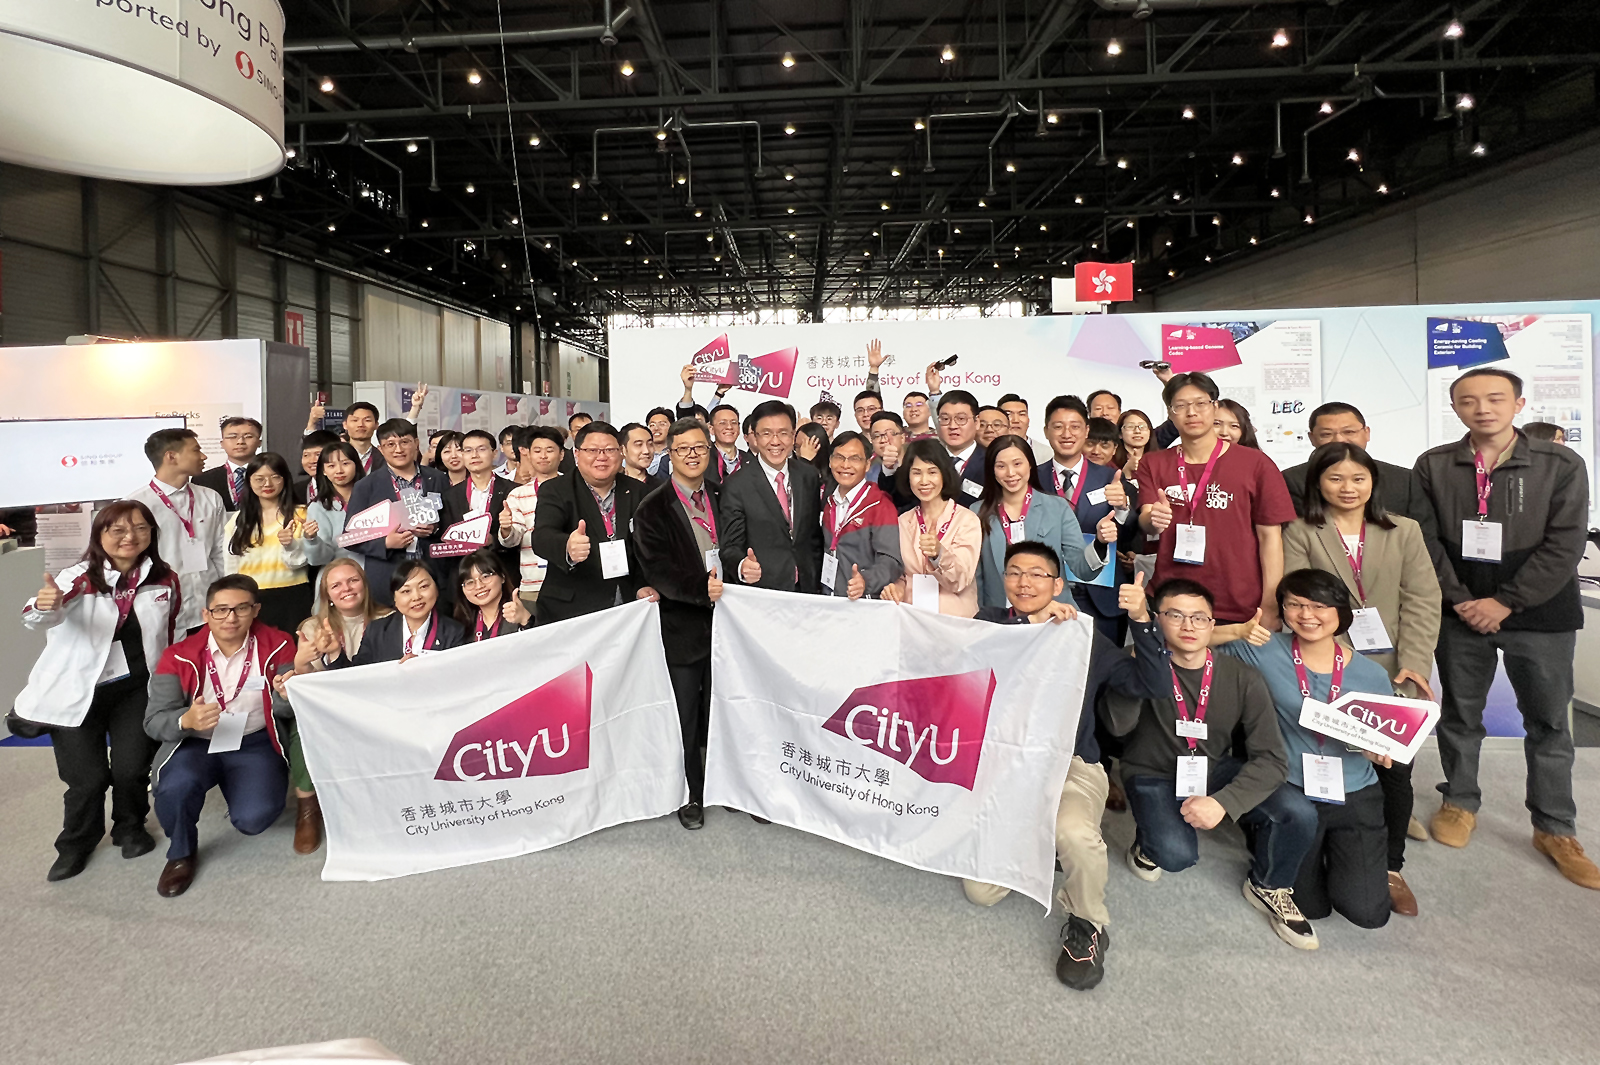 香港城市大学扬威日内瓦国际发明展 获奖数量再创新高